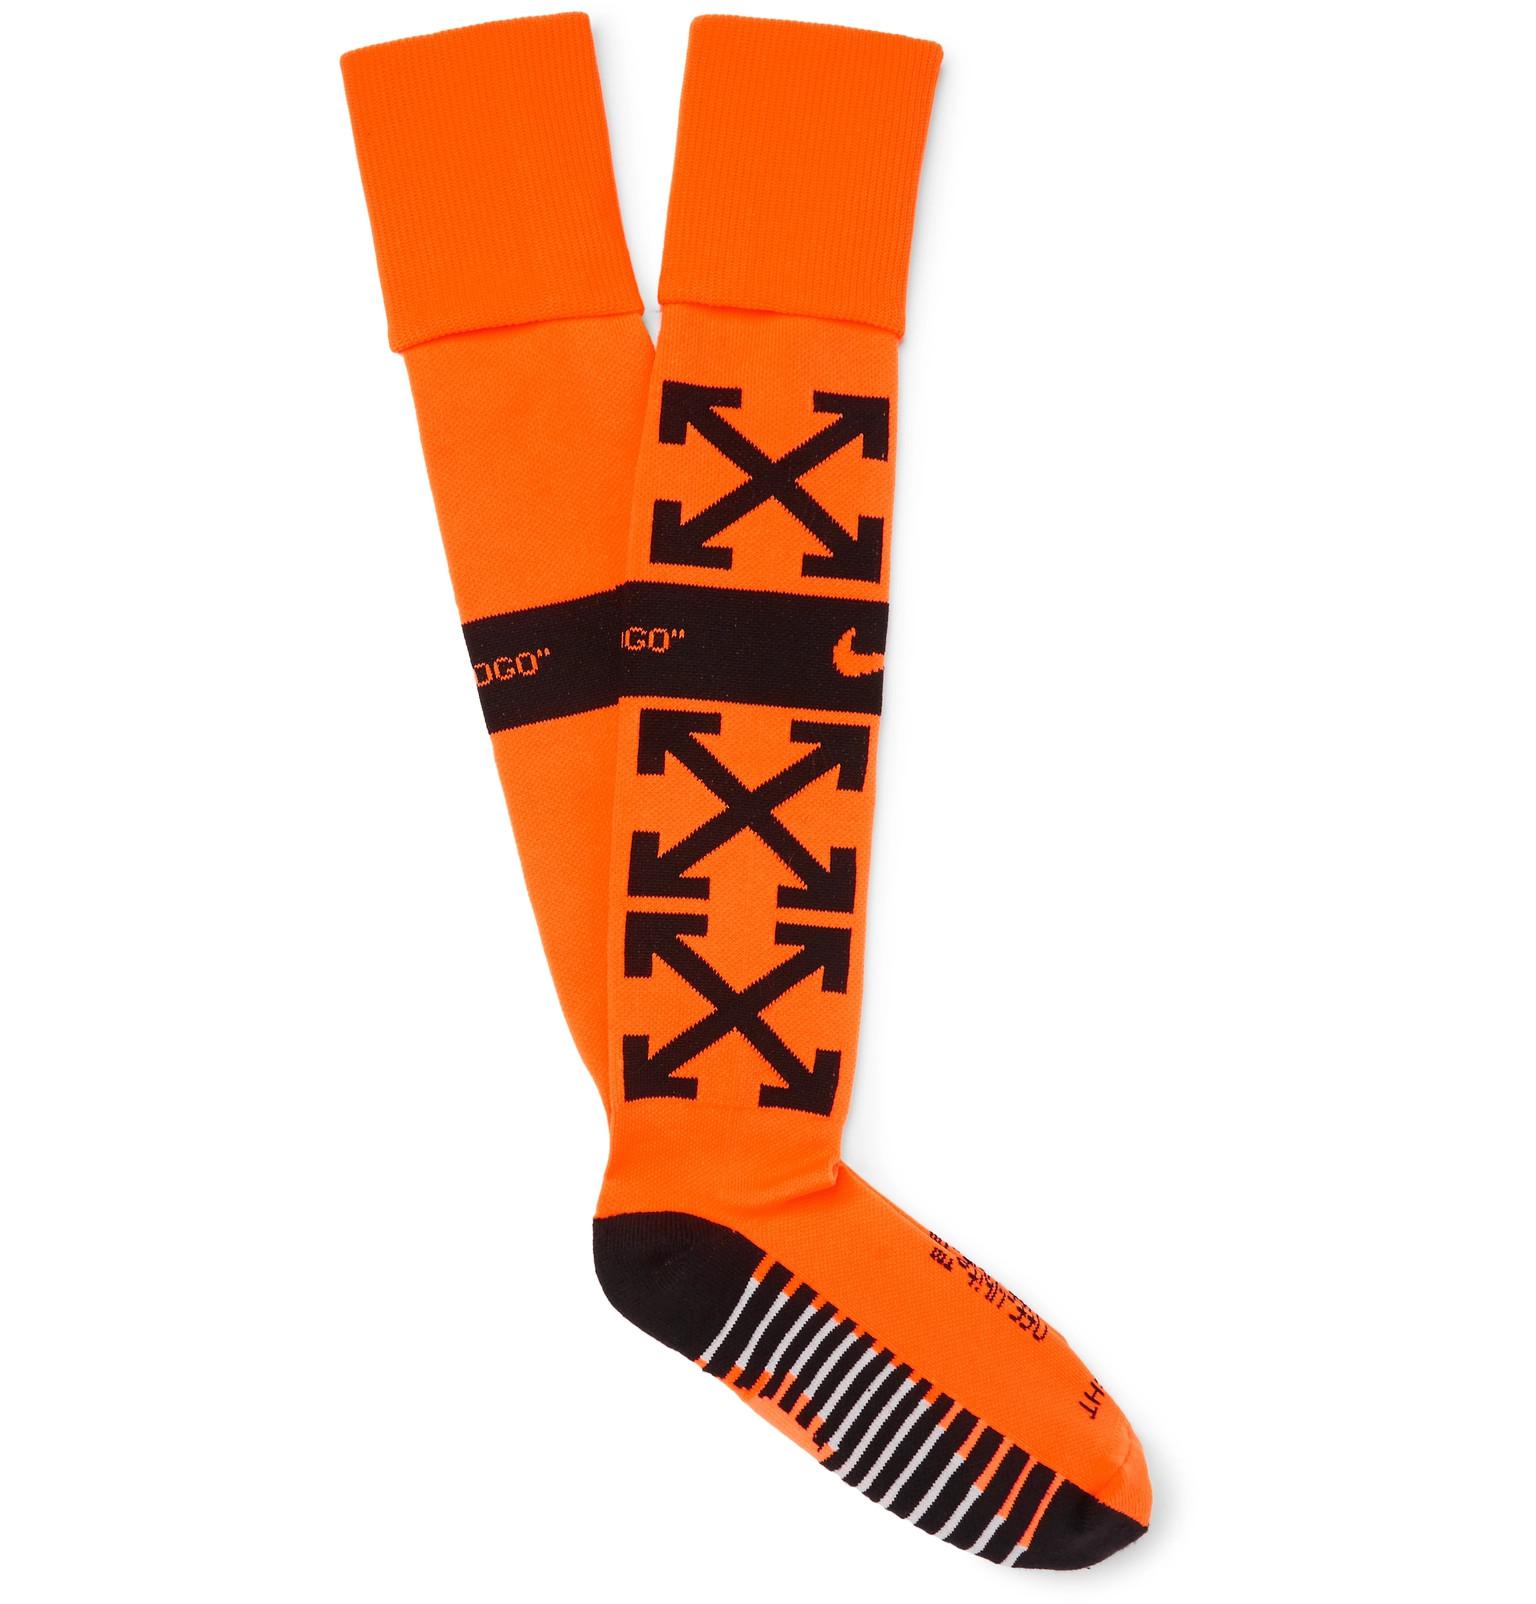 white and orange nike socks